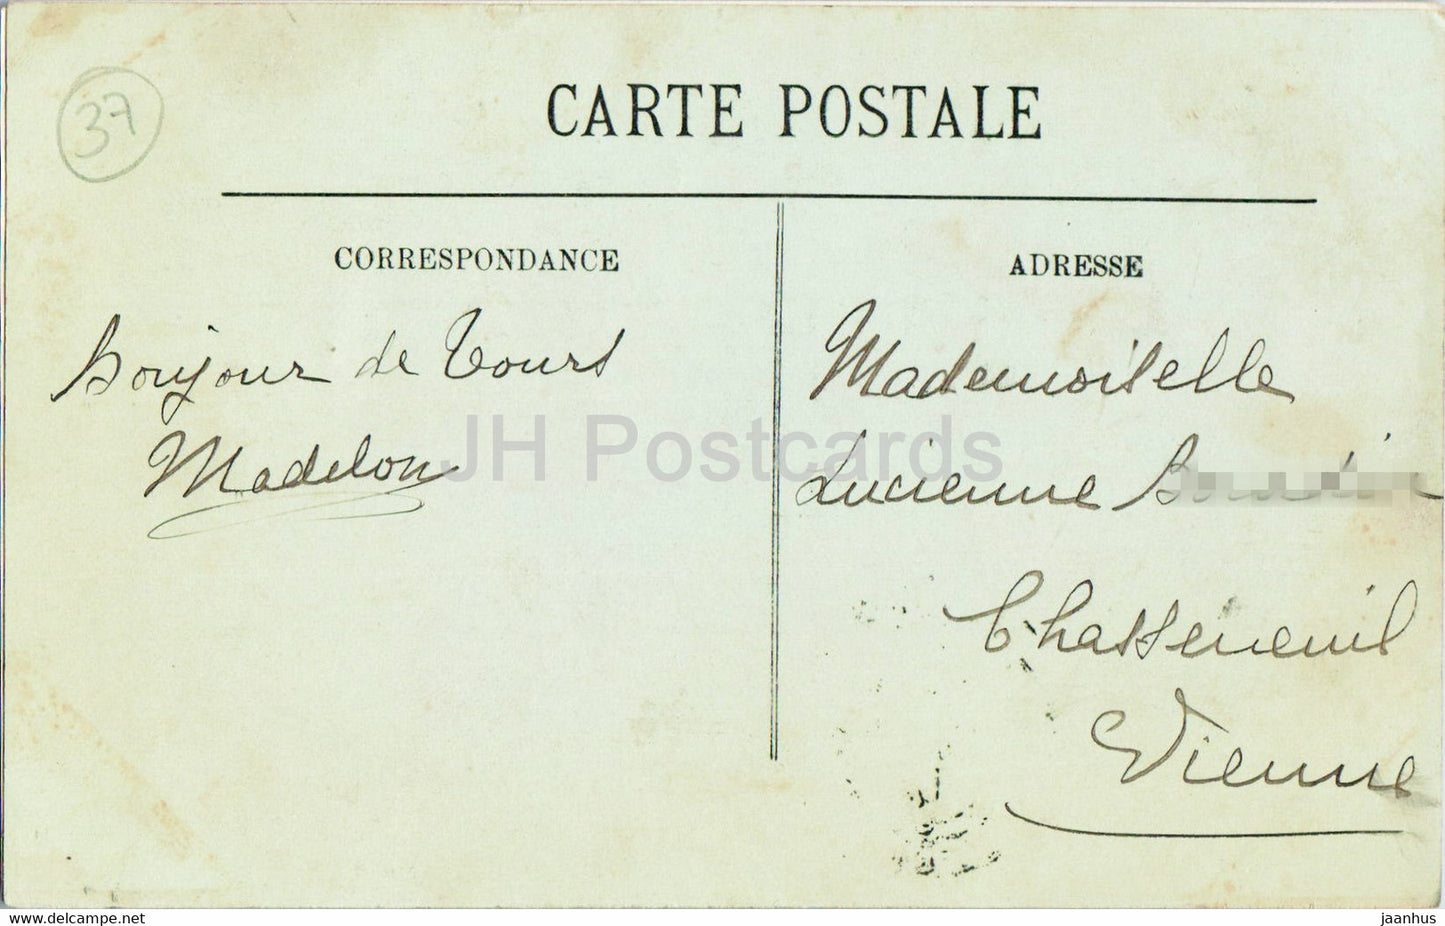 Touren – Le Dome de la Basilique Saint Martin – La Ville et la Cathedrale – 33 – alte Postkarte – 1912 – Frankreich – gebraucht